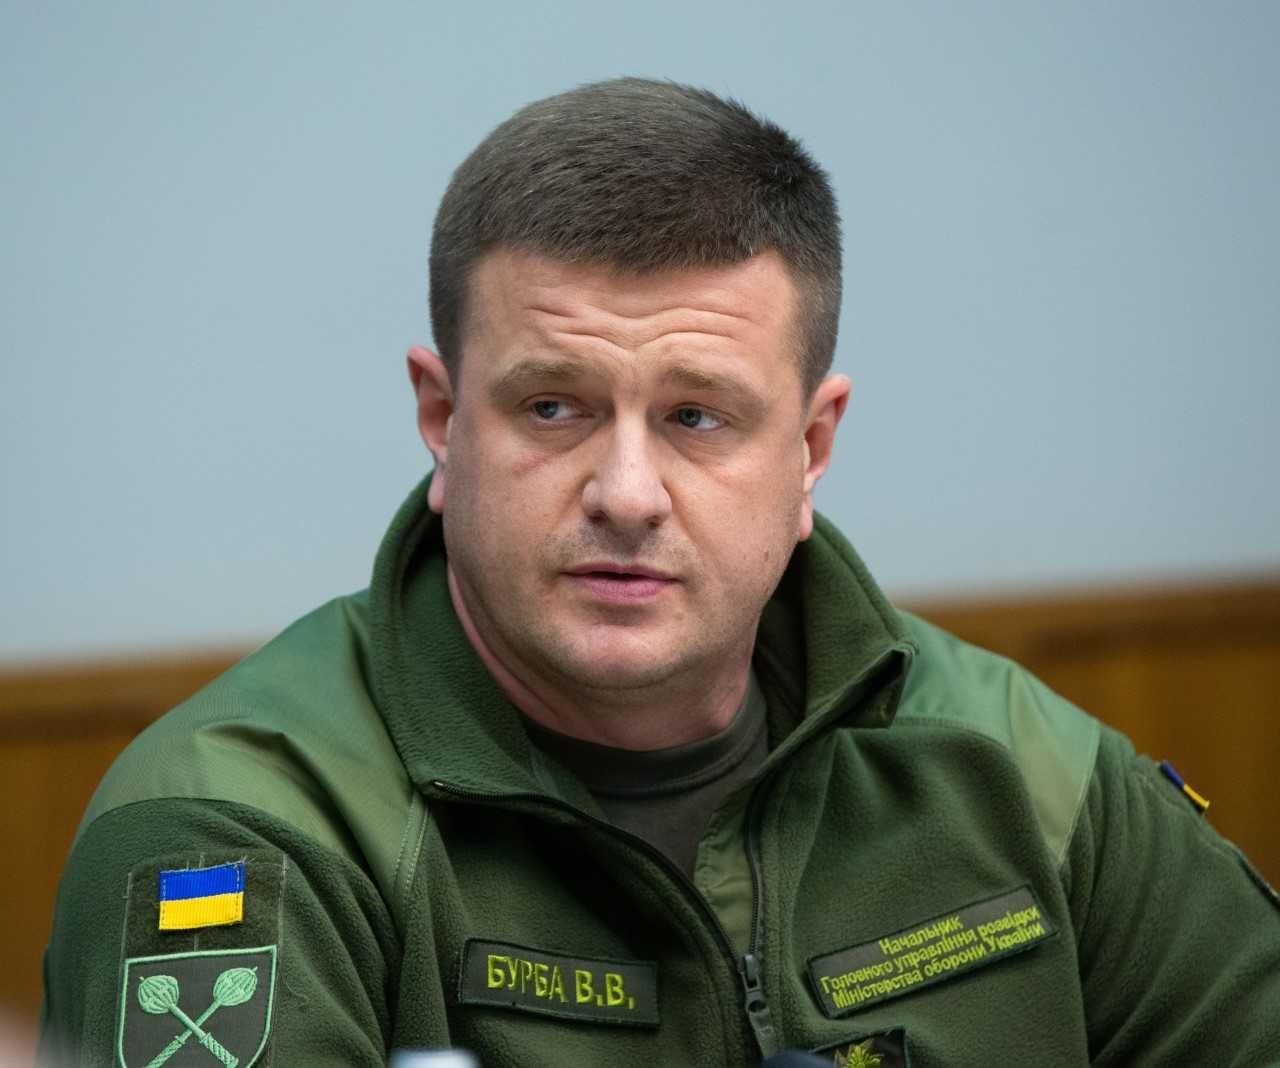 Бурба звільнився з військової служби, – ЗМІ - Україна новини - 24 Канал